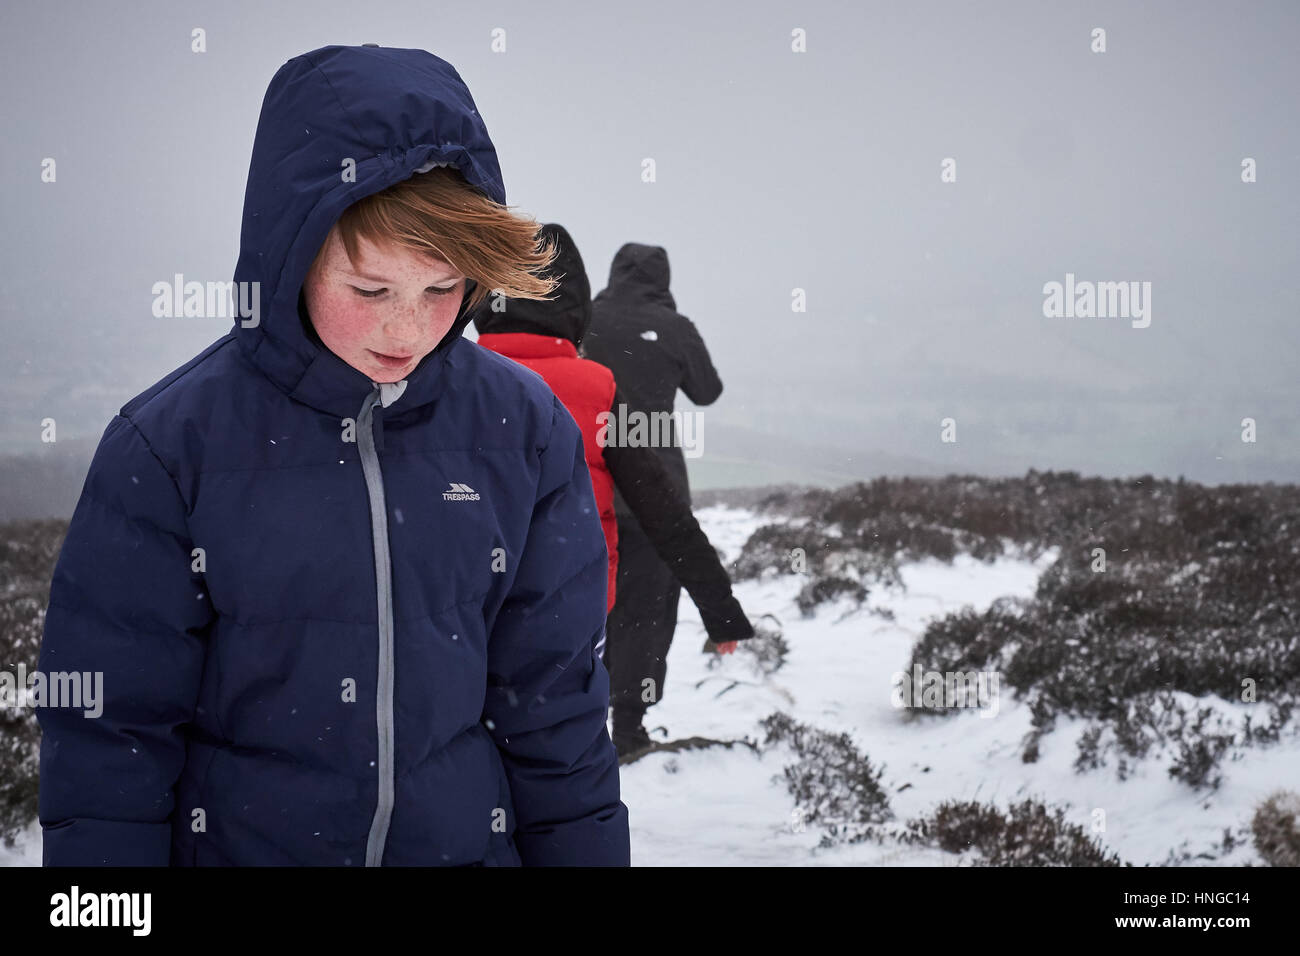 Une jeune fille s'est enveloppée de chaleur lors d'une journée froide et hivernant à pied dans la neige sur une colline Banque D'Images